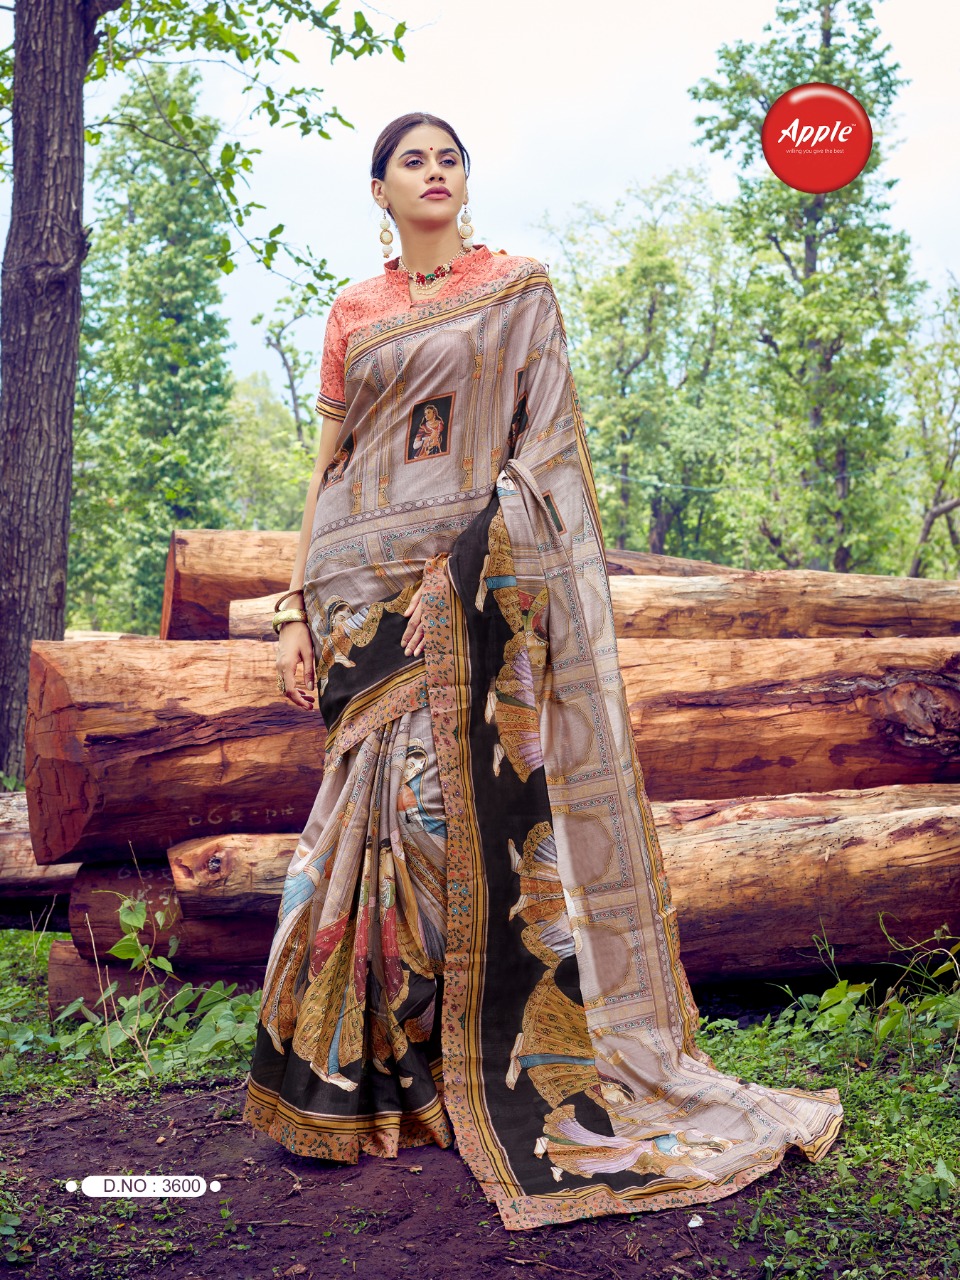 Apple sarees anaaya digital printed cotton silk sarees exporter